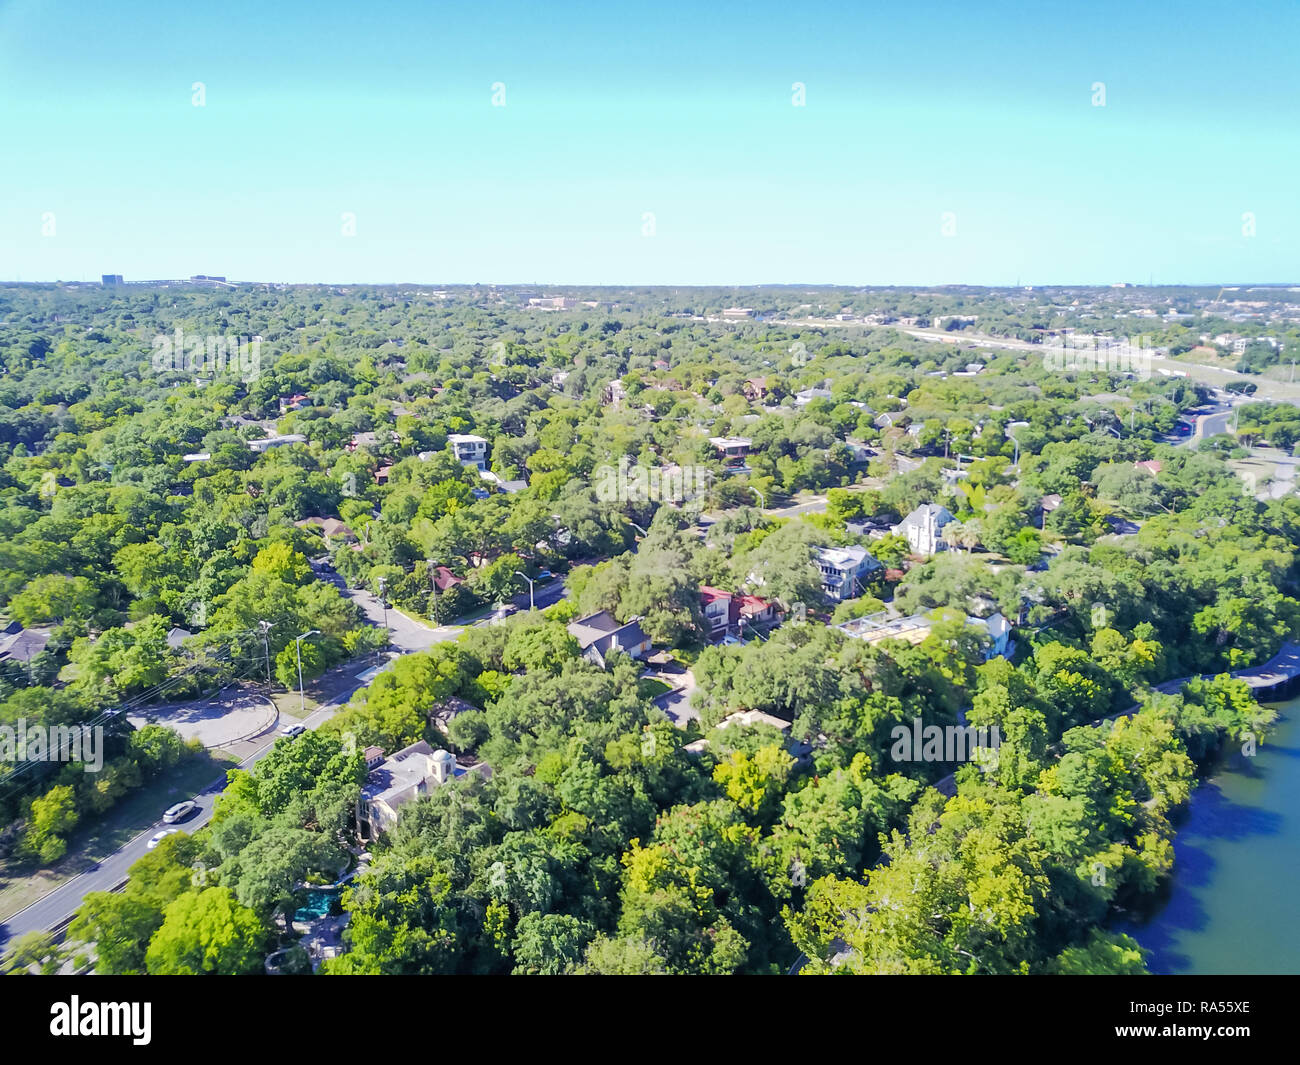 Aerial view riverside residential neighborhood near Colorado Riv Stock Photo